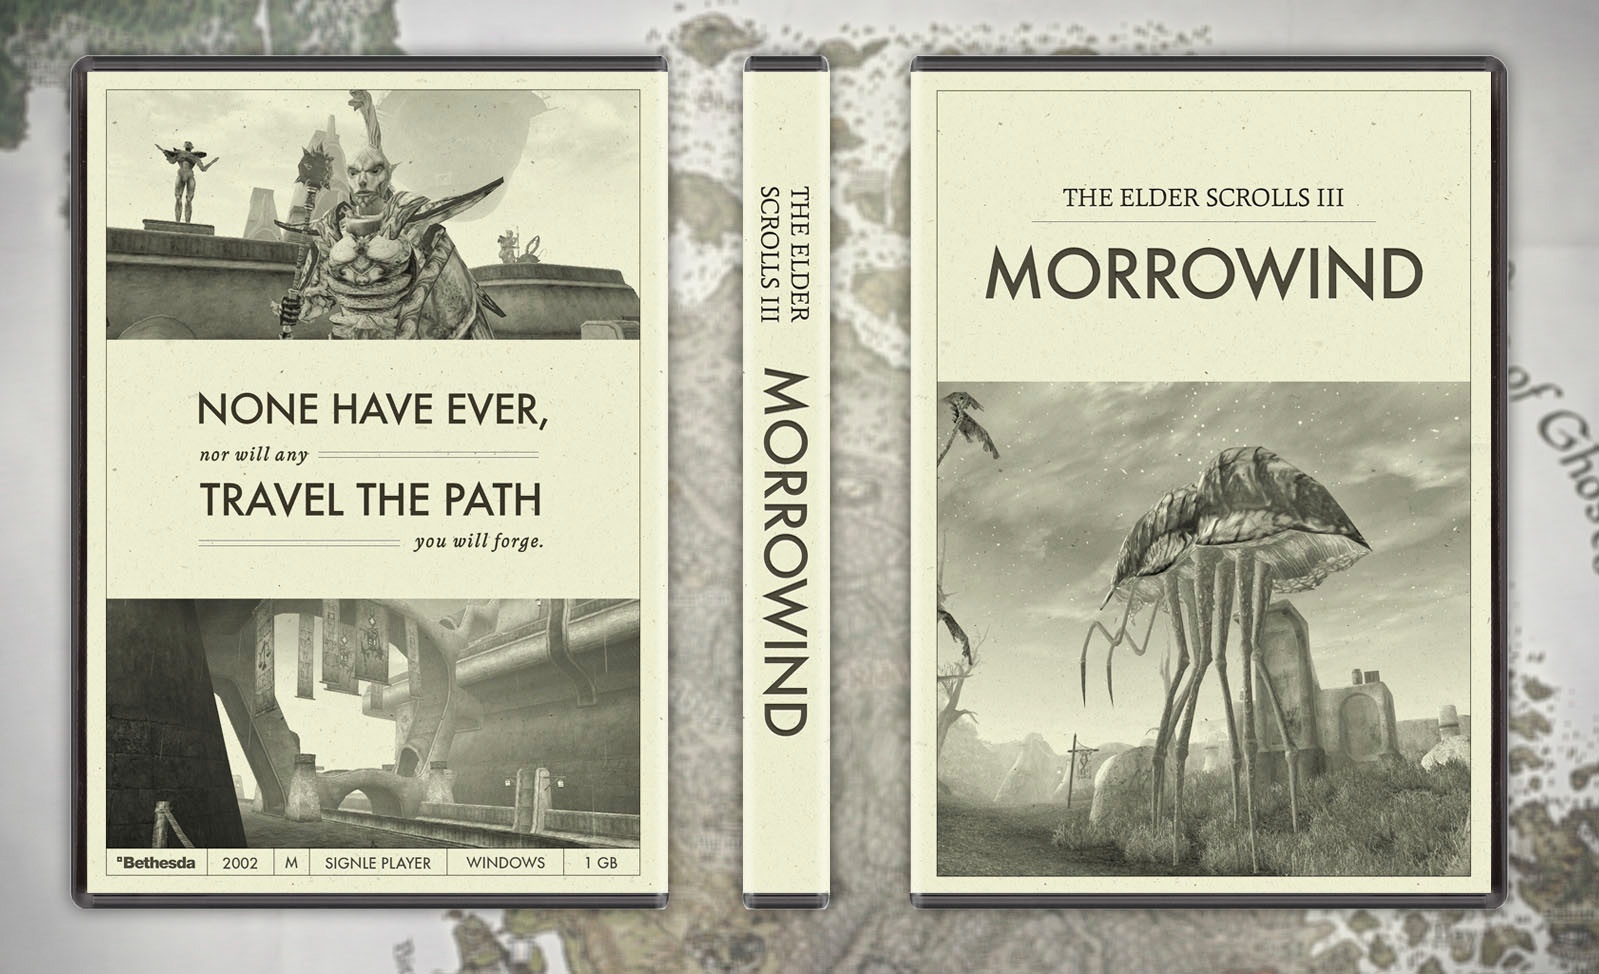 The Elder Scrolls III: Morrowind box cover